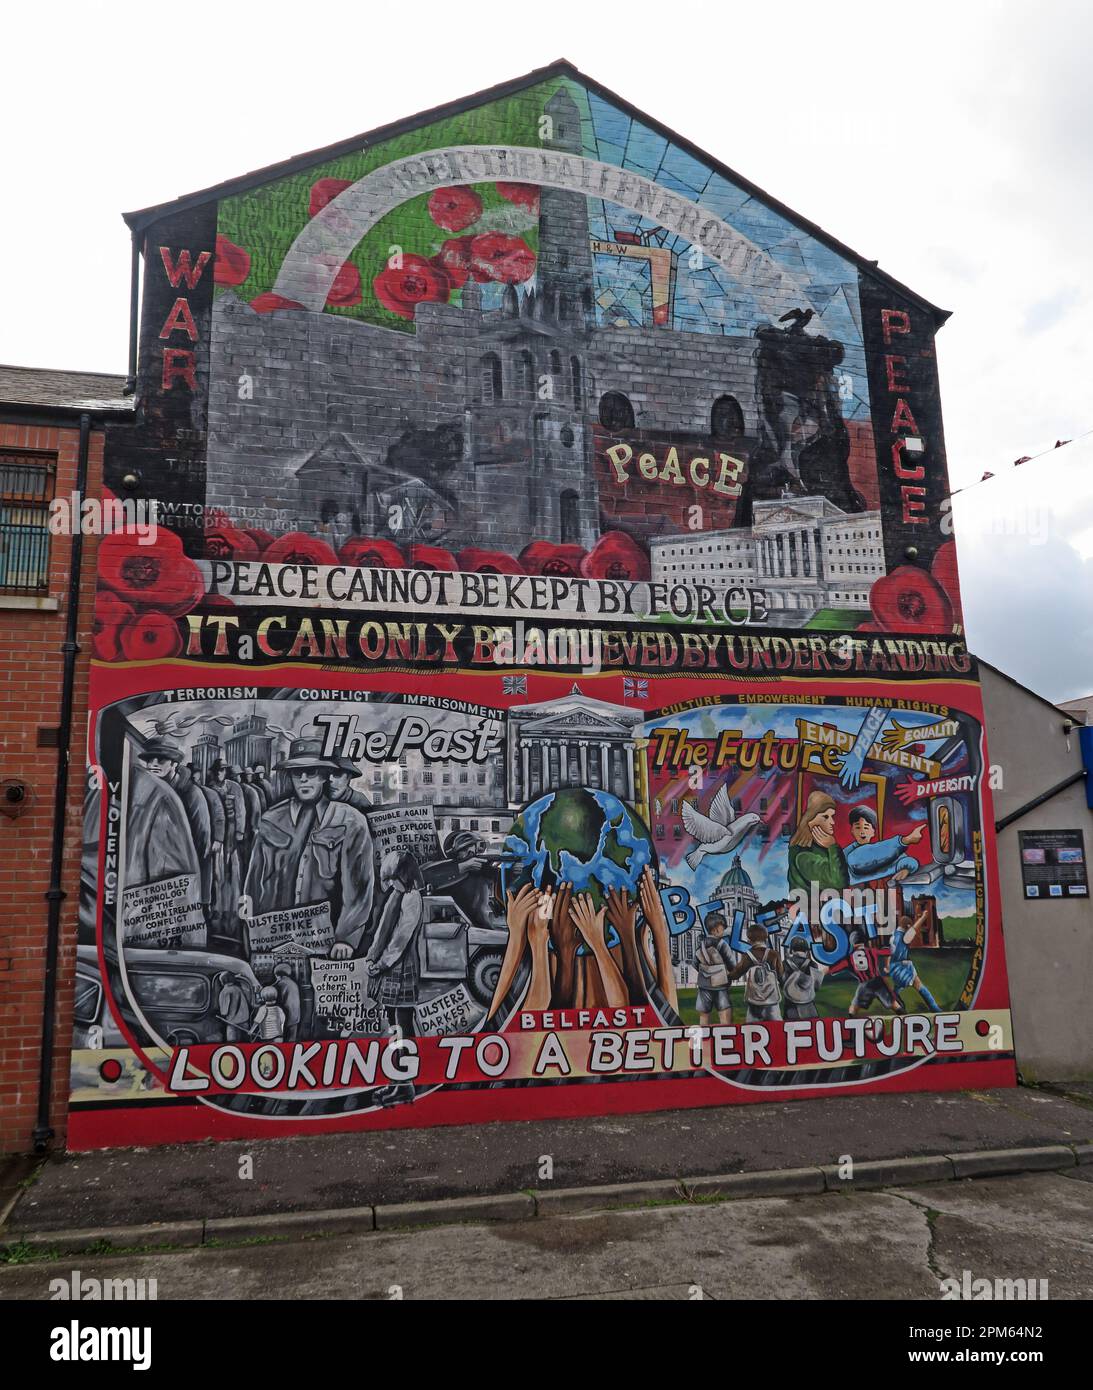 Fresque communautaire - la paix ne peut pas être maintenue par la force, elle ne peut être réalisée que par la compréhension - Belfast cherche un avenir meilleur Banque D'Images